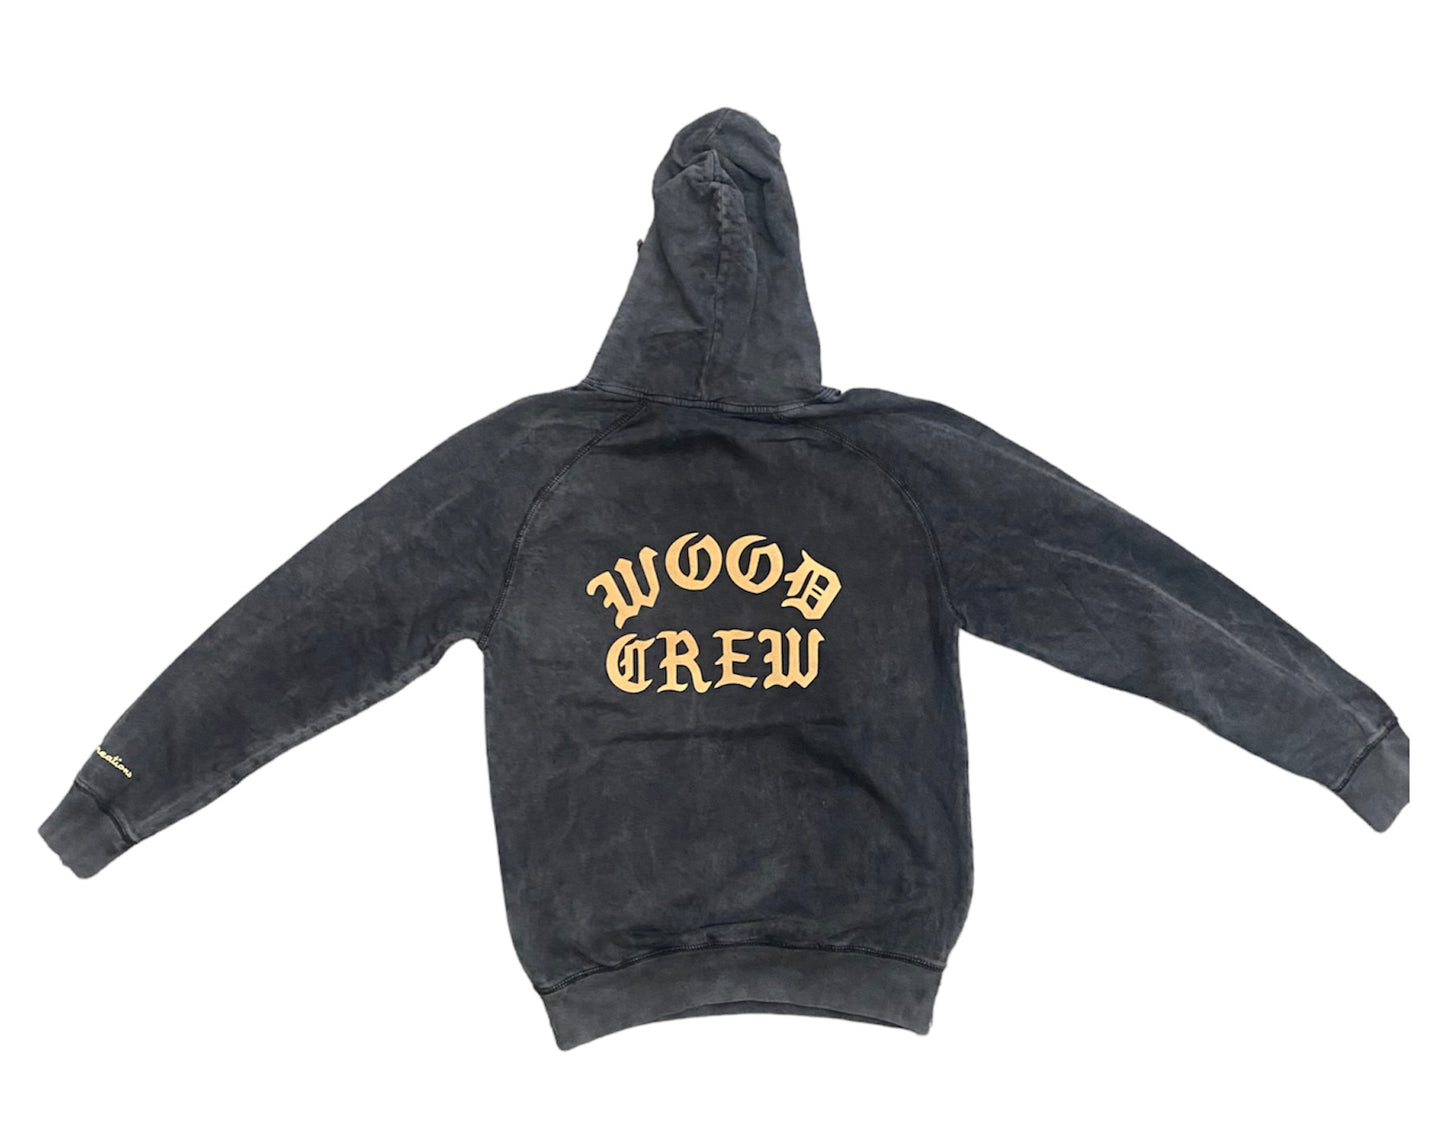 Wood Crew Vintage Hooded Sweatshirt (black/vegas gold)